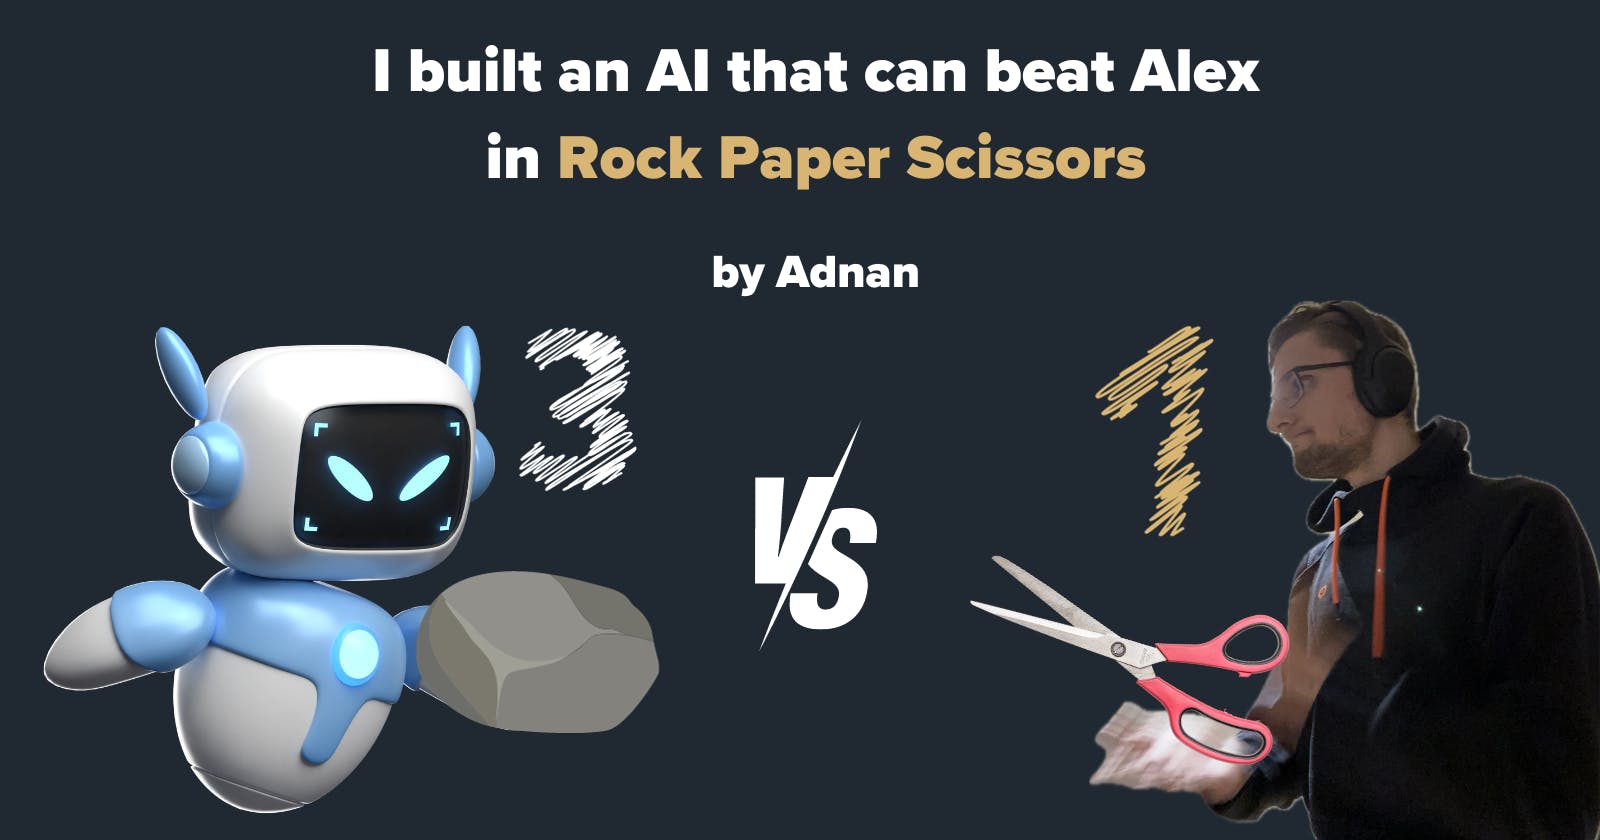 I built an AI to beat Alex in Rock Paper Scissors